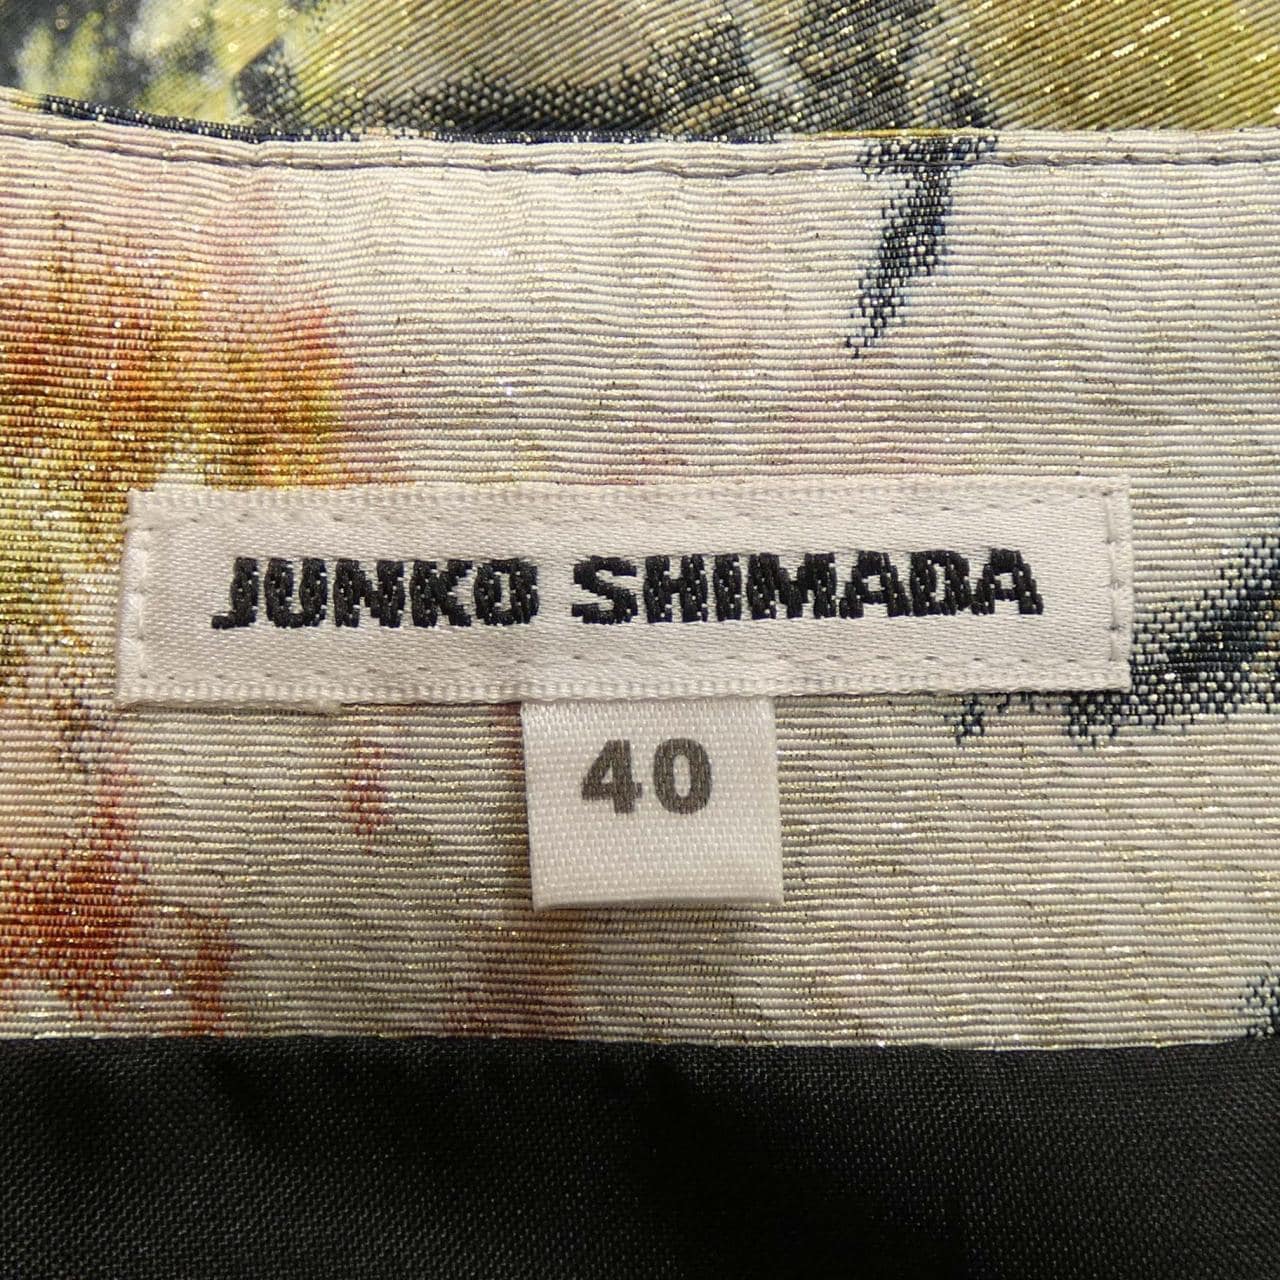 ジュンコシマダ JUNKO SHIMADA スカート